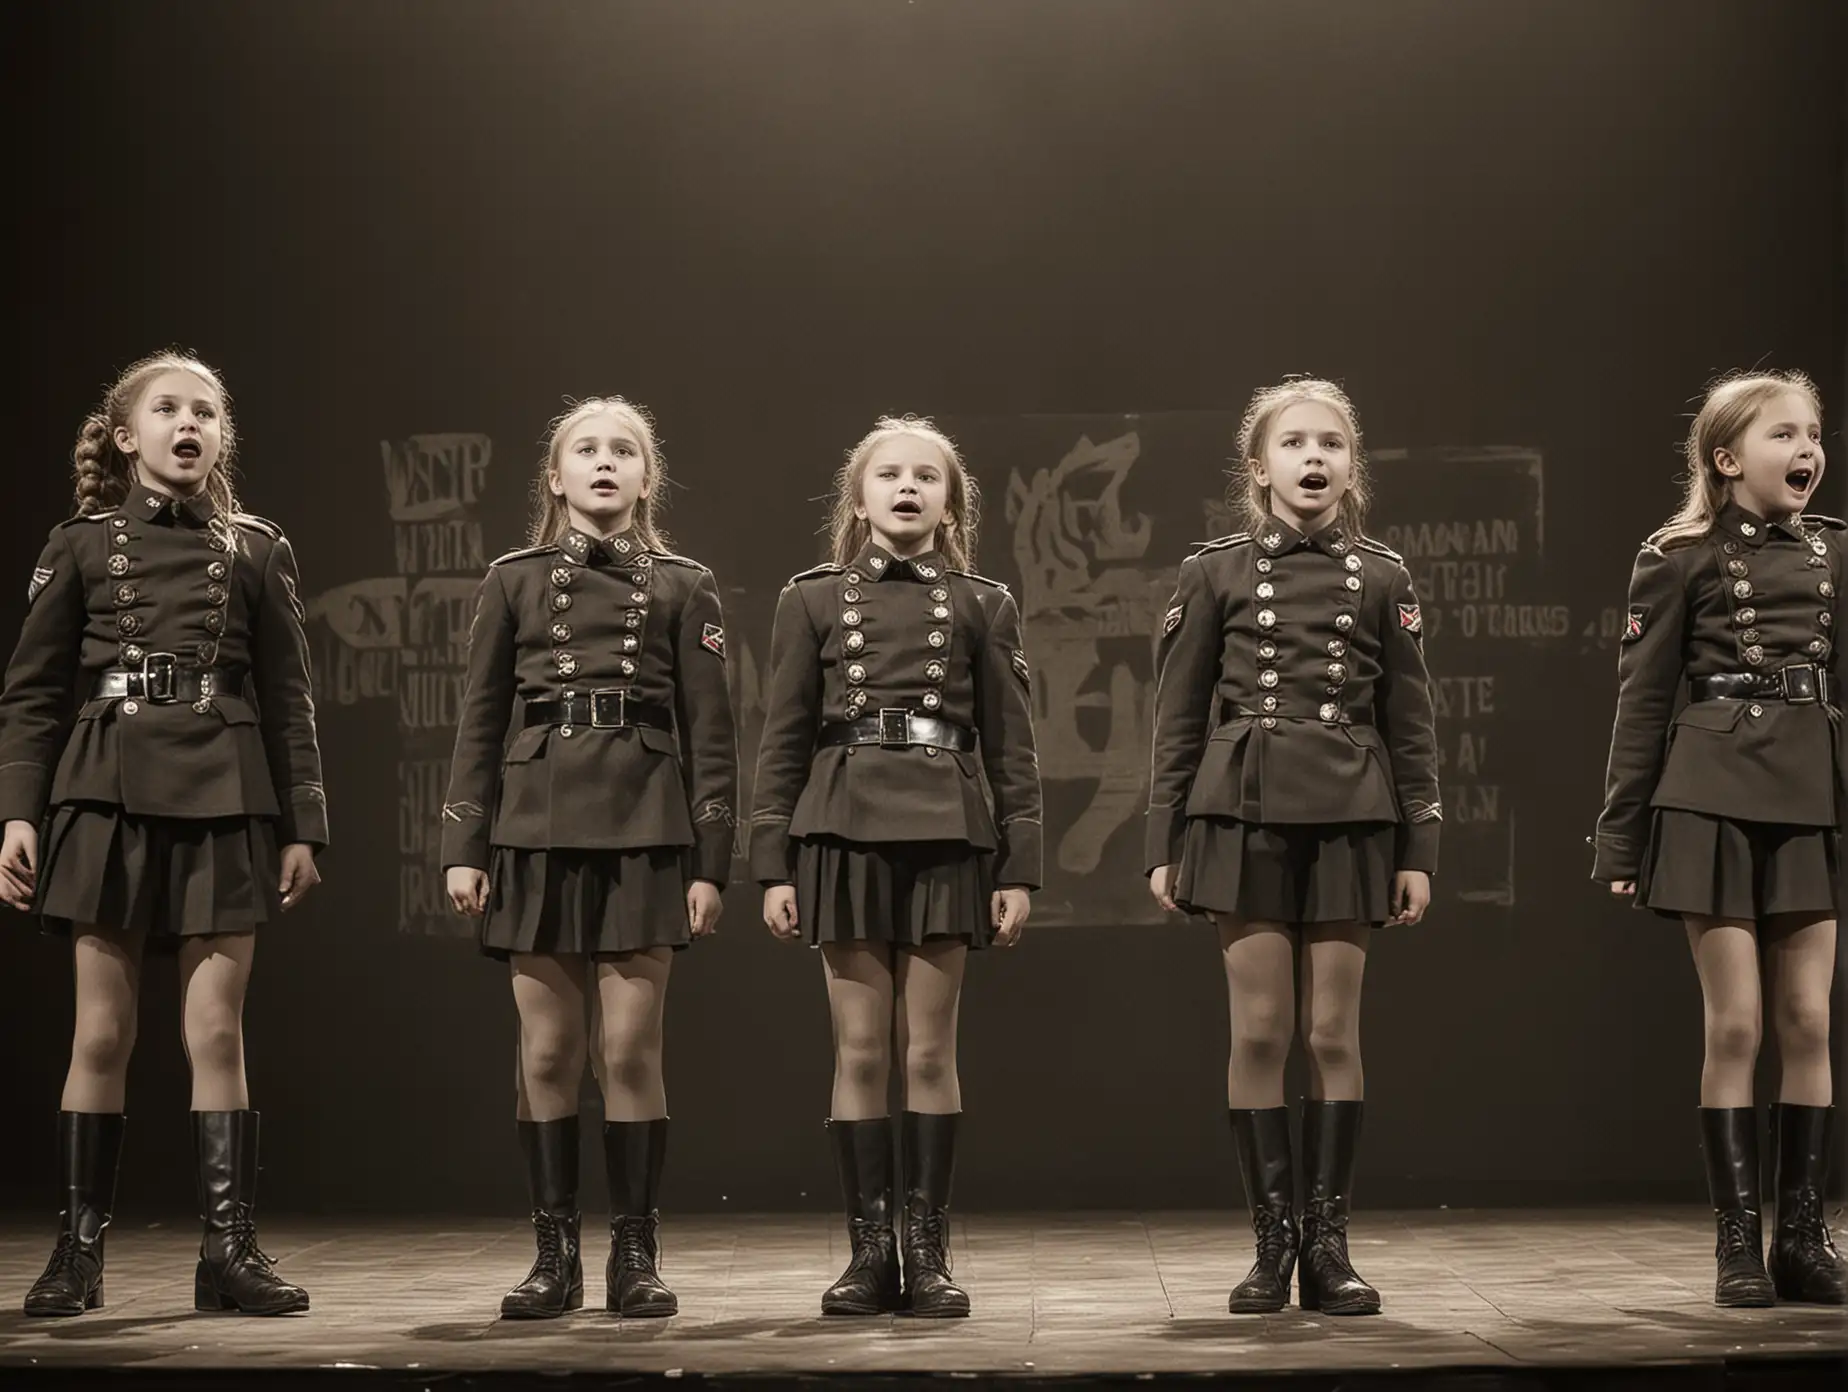 русские девчонки 10 лет на сцене ансамбль "Ночные ведьмы" они одеты в короткую военную форму, колготки, ботинки поют песню